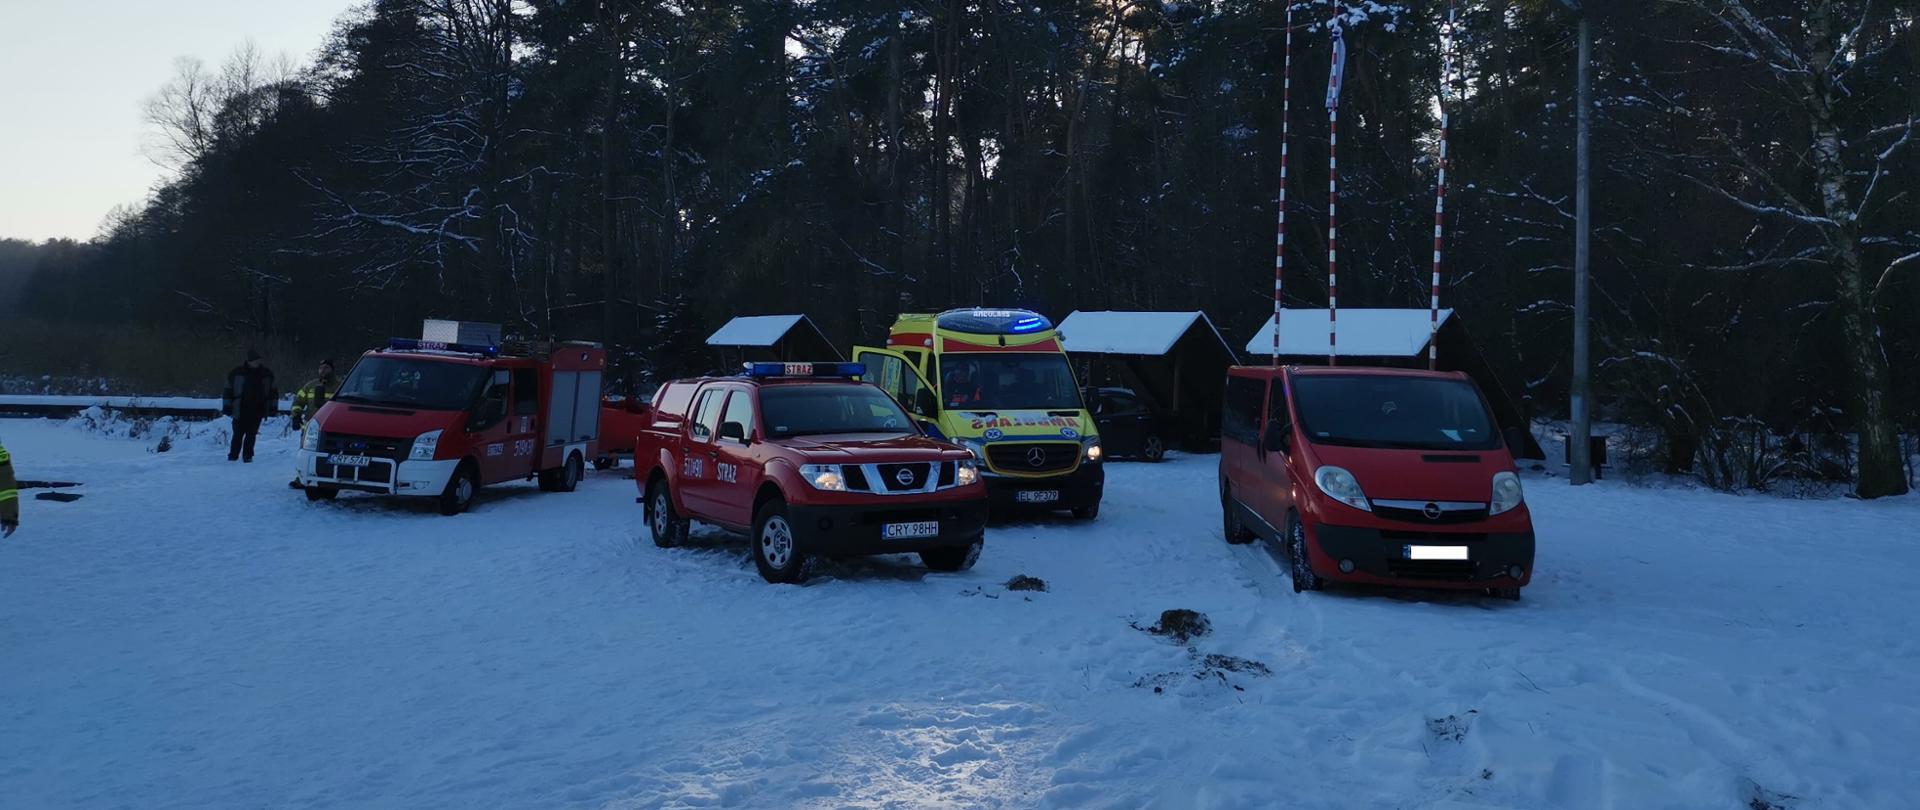 Samochody strażackie i karetka pogotowia na zaśnieżonej plaży.